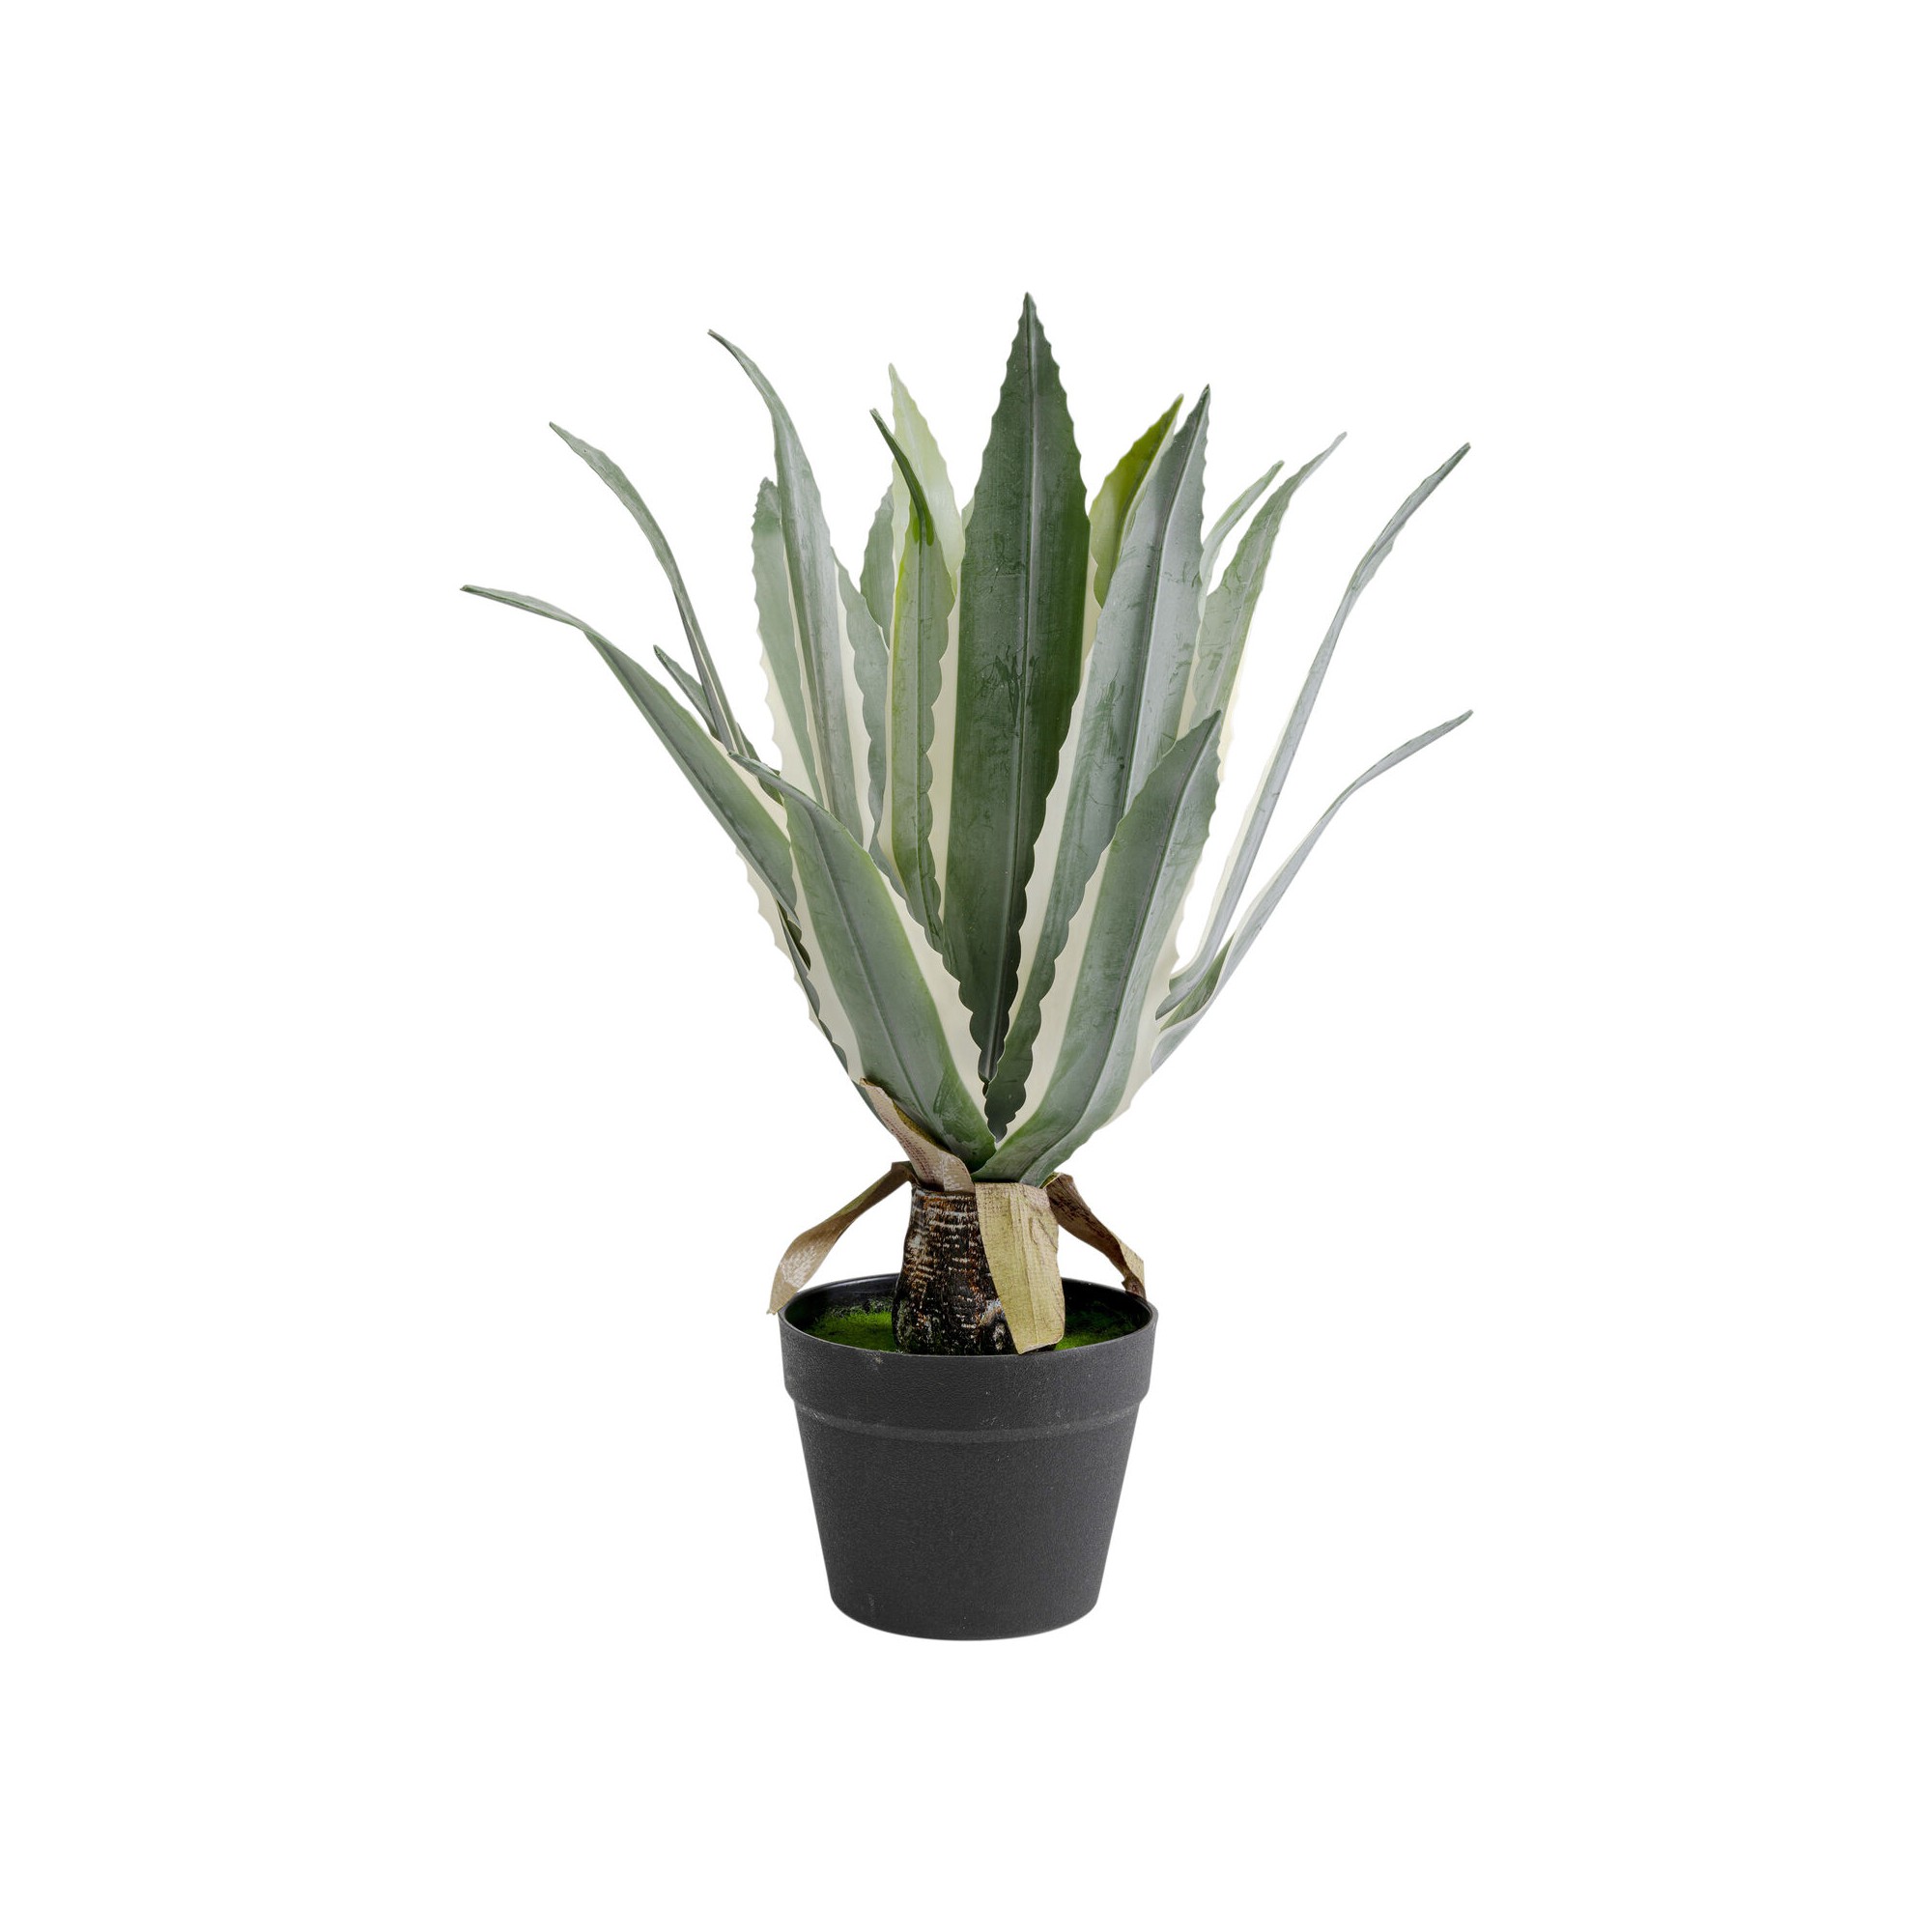 Plante décorative Agave 50cm